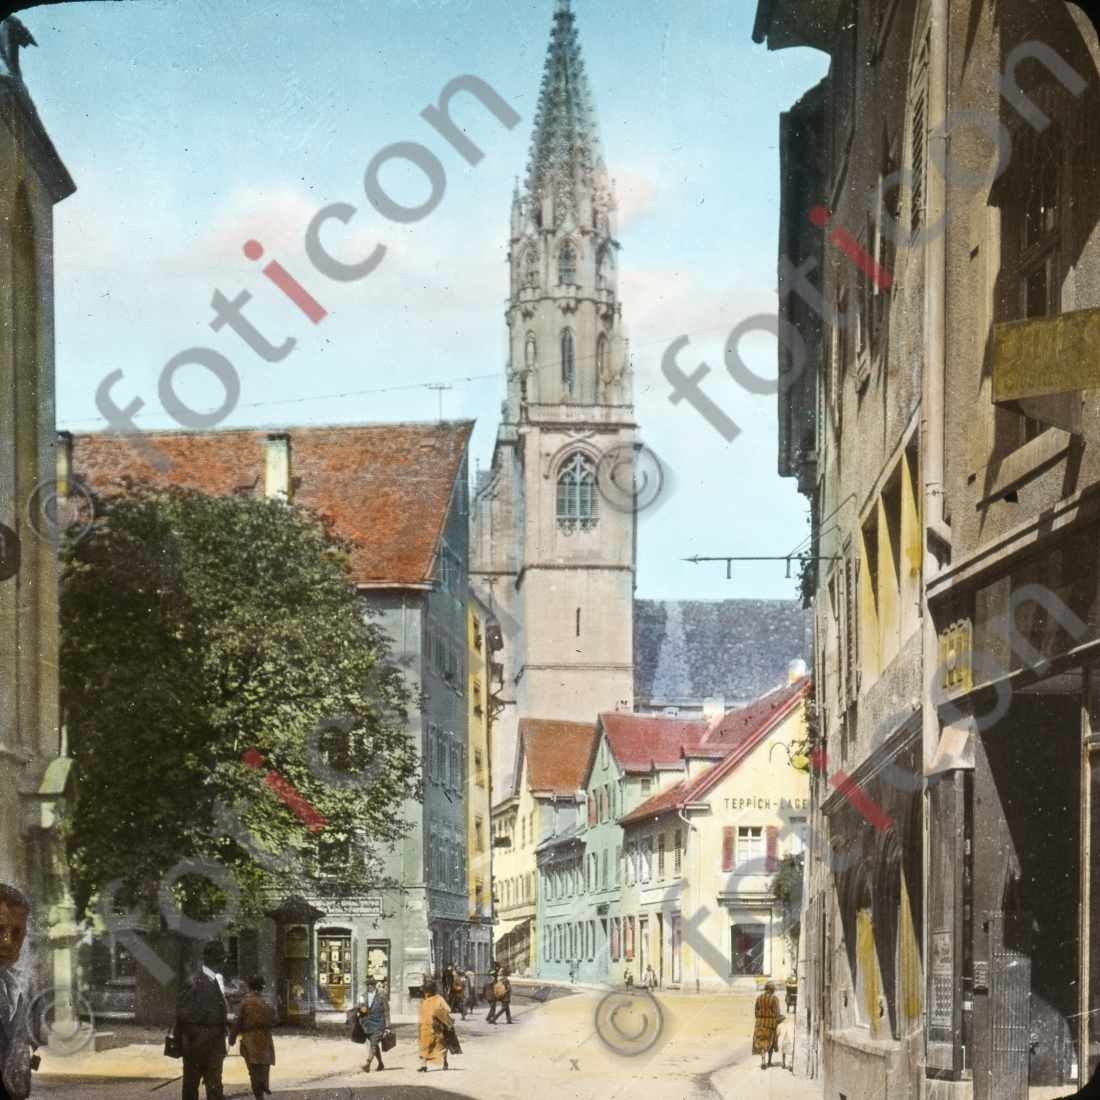 Konstanz | Constance - Foto foticon-simon-127-019.jpg | foticon.de - Bilddatenbank für Motive aus Geschichte und Kultur